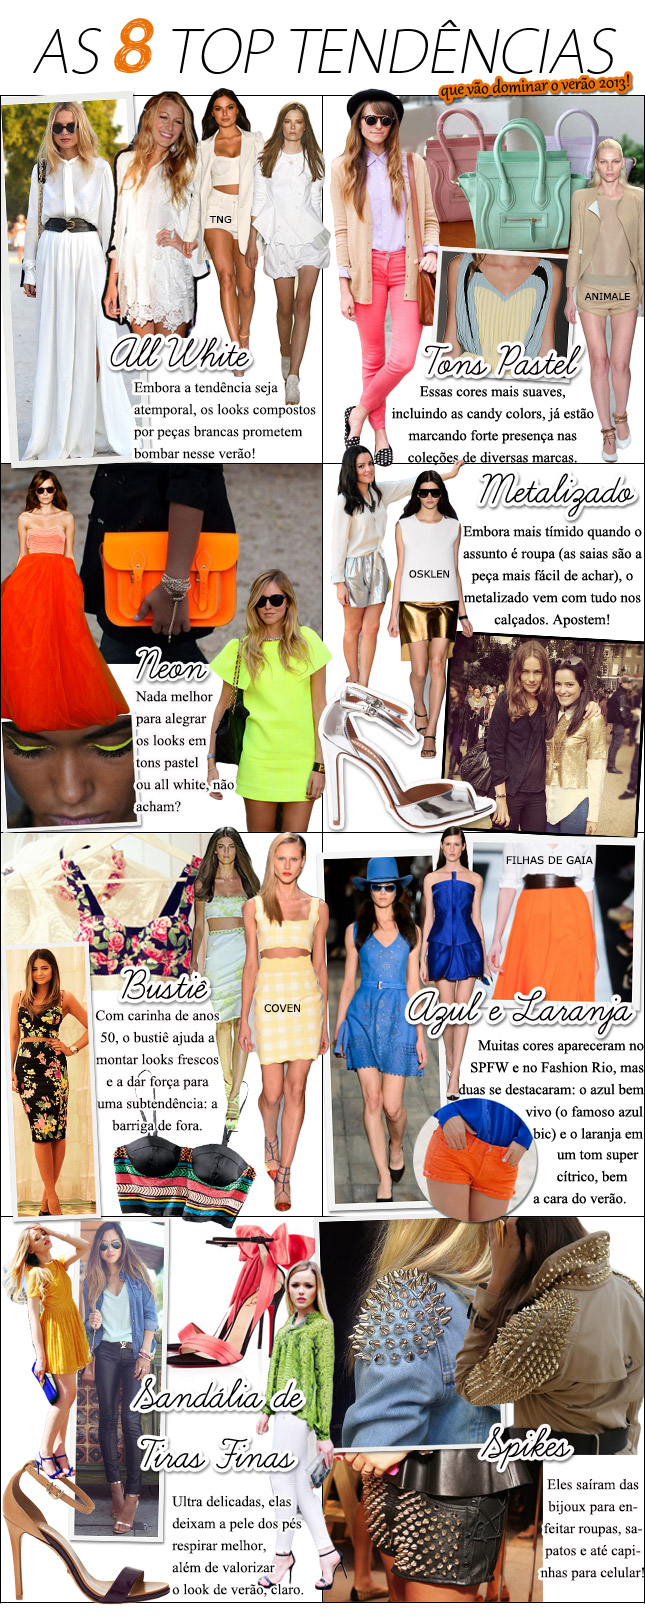 tendencias tendencia verao 2013 neon candy colors spikes blog de moda oh my closet